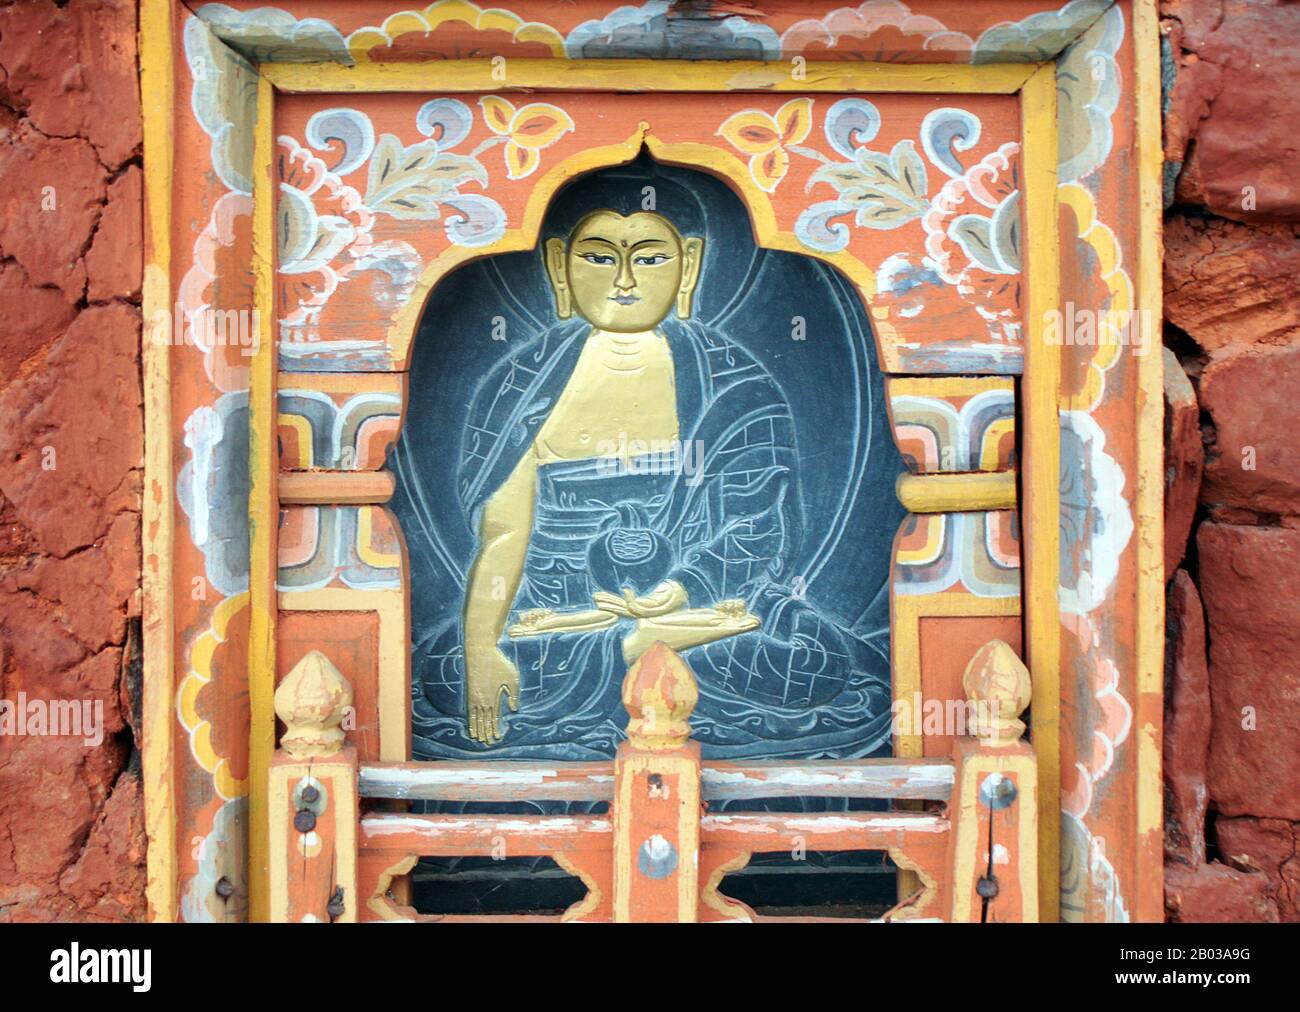 Der Dochula-Pass ist ein bhutanischer Gebirgspass, der an der Straße von Thimphu nach Punakha liegt. Innerhalb des Passes befinden sich 108 Gedenkstätten "Chortens" oder Stupas, bekannt als "druk Wangyal Chortens", die von der ältesten Königinmutter Ashi Dorji Wangmo zu Ehren bhutanischer Soldaten erbaut wurden, die im Kampf gegen assamesische Aufständische aus Indien im Dezember 2003 getötet wurden. Im Pass befindet sich auch ein Kloster, der Druk Wangyal Lhakhang (Tempel), der zu Ehren von Jigme Singye Wanghuck erbaut wurde, der vierte Druk Gyalpo (Staatsoberhaupt), sowie der Royal Botanical Park, der erste, der in Bhutan eingerichtet wurde. Stockfoto